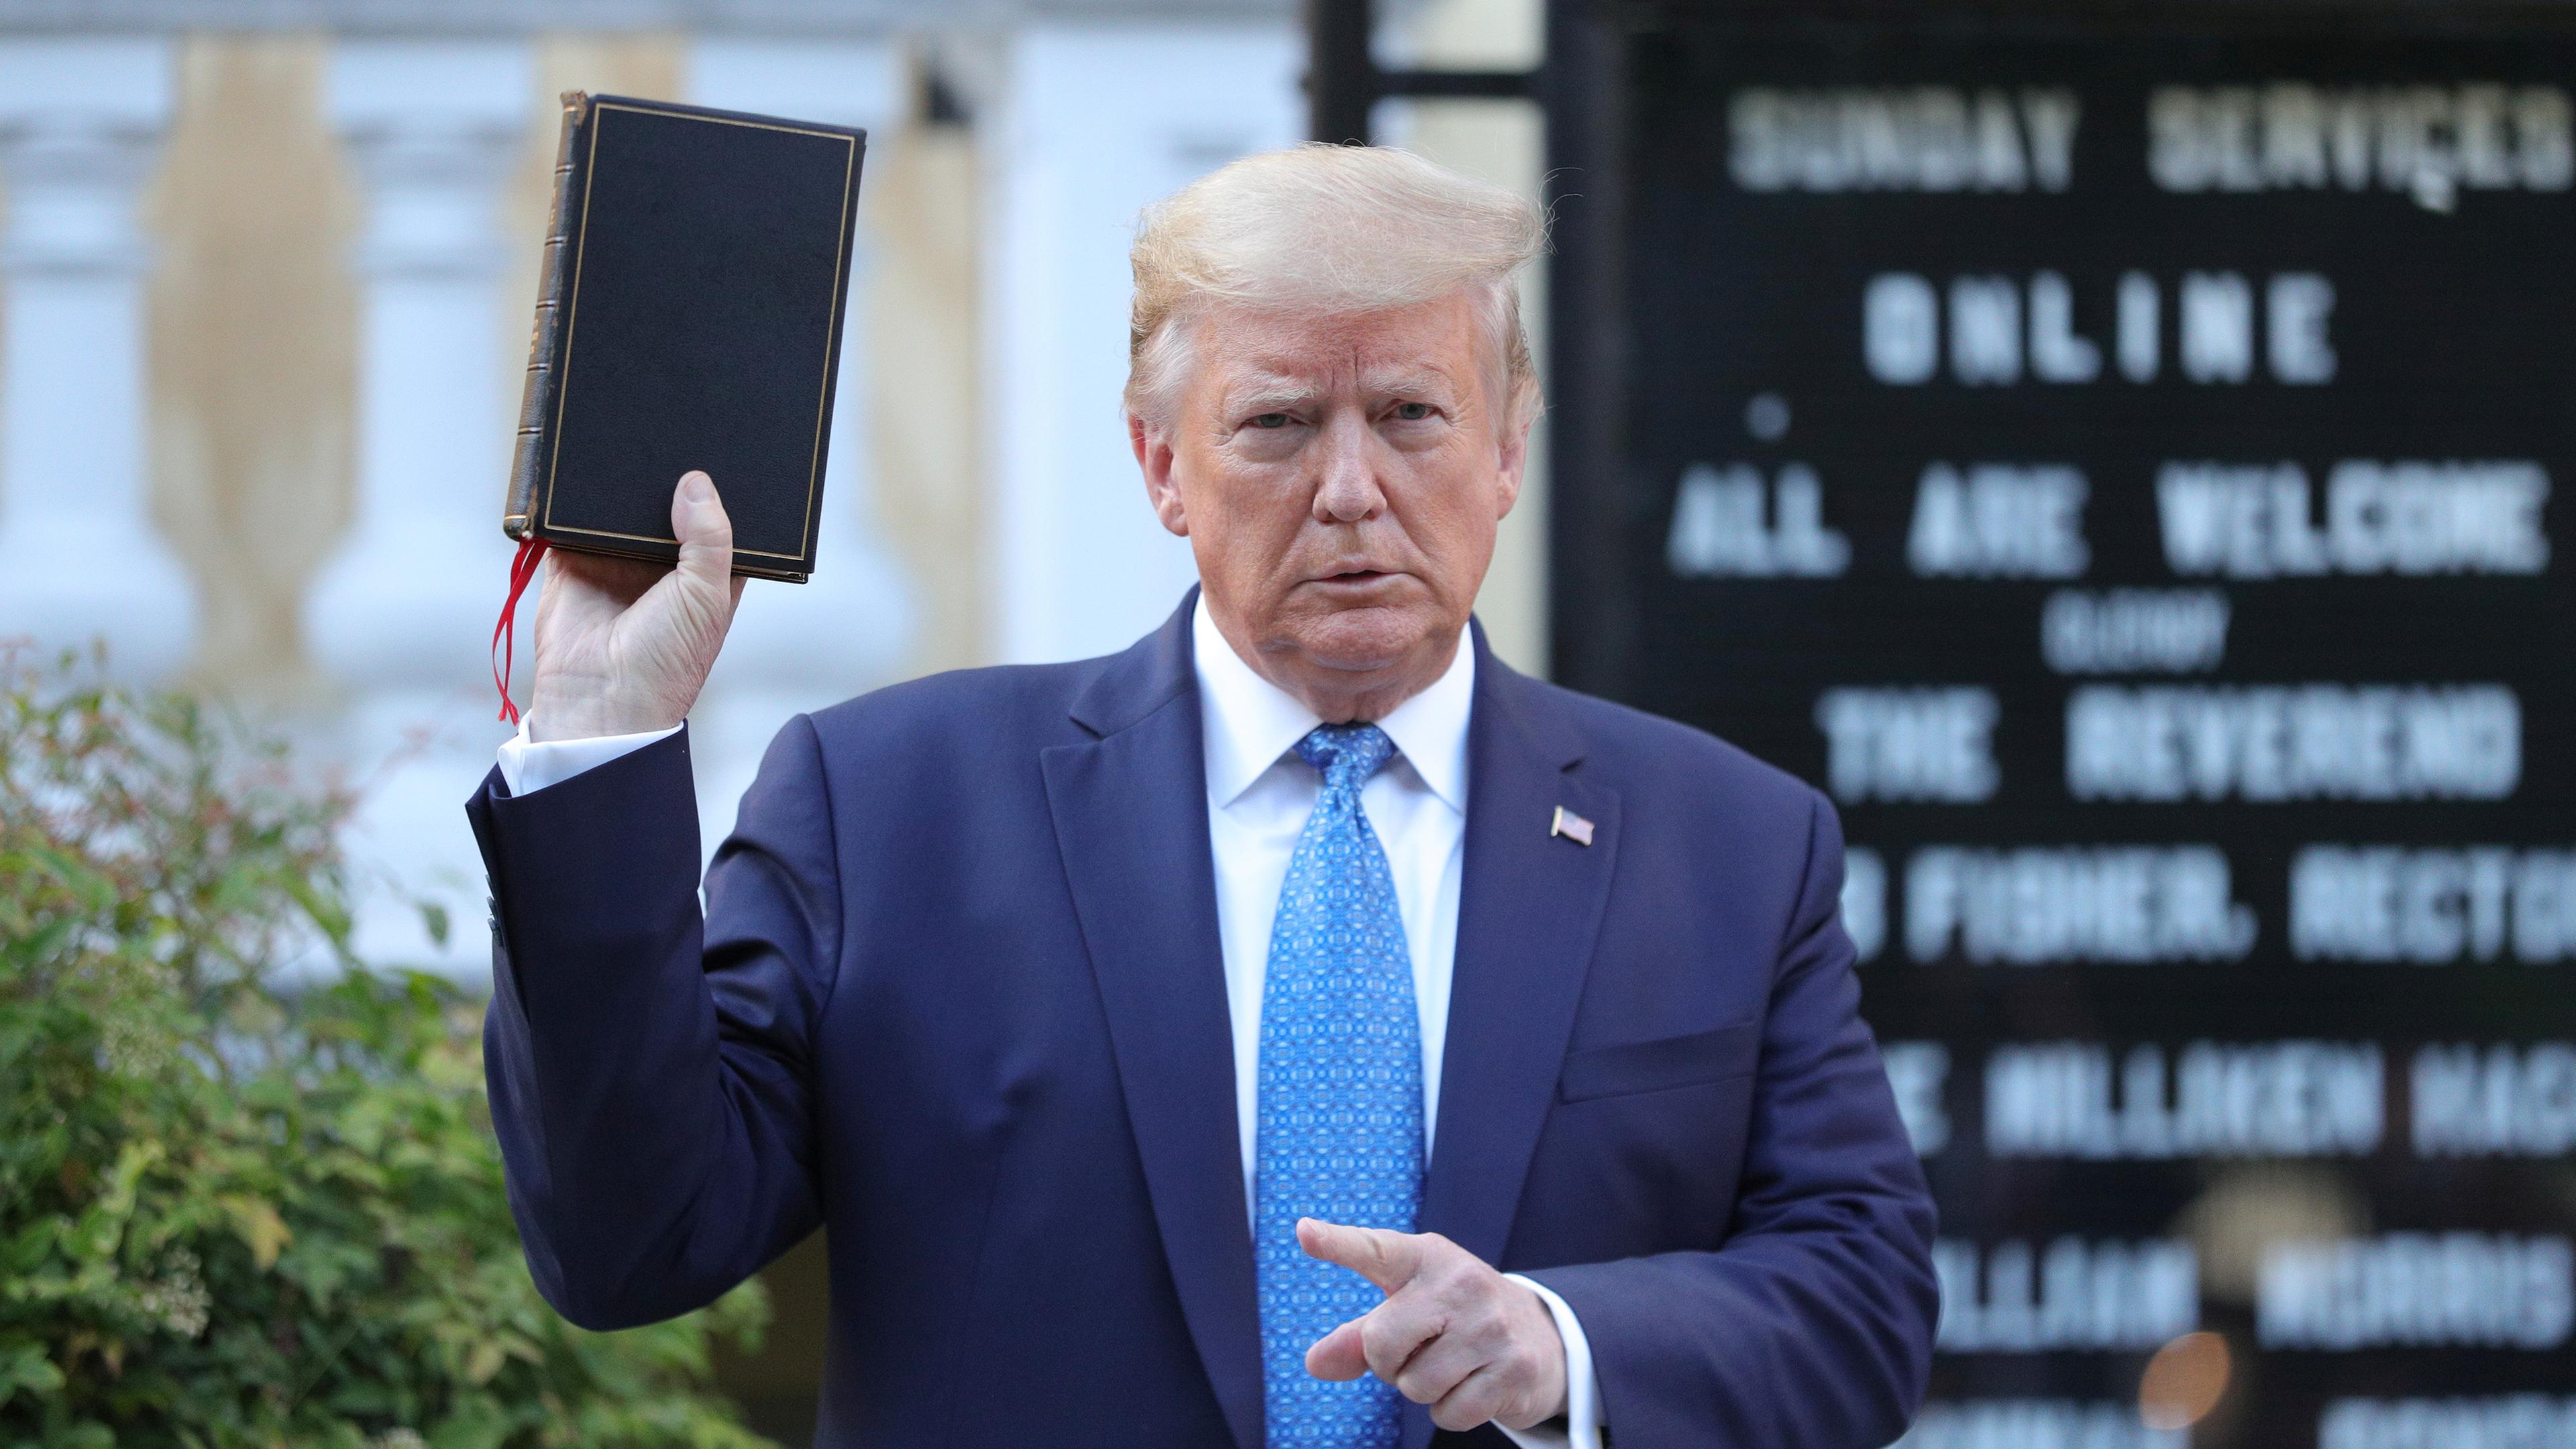 Donald Trump hält eine Bibel während eines Fototermins vor der St. John's Kirche in Washington, aufgenommen am 02.06.2020